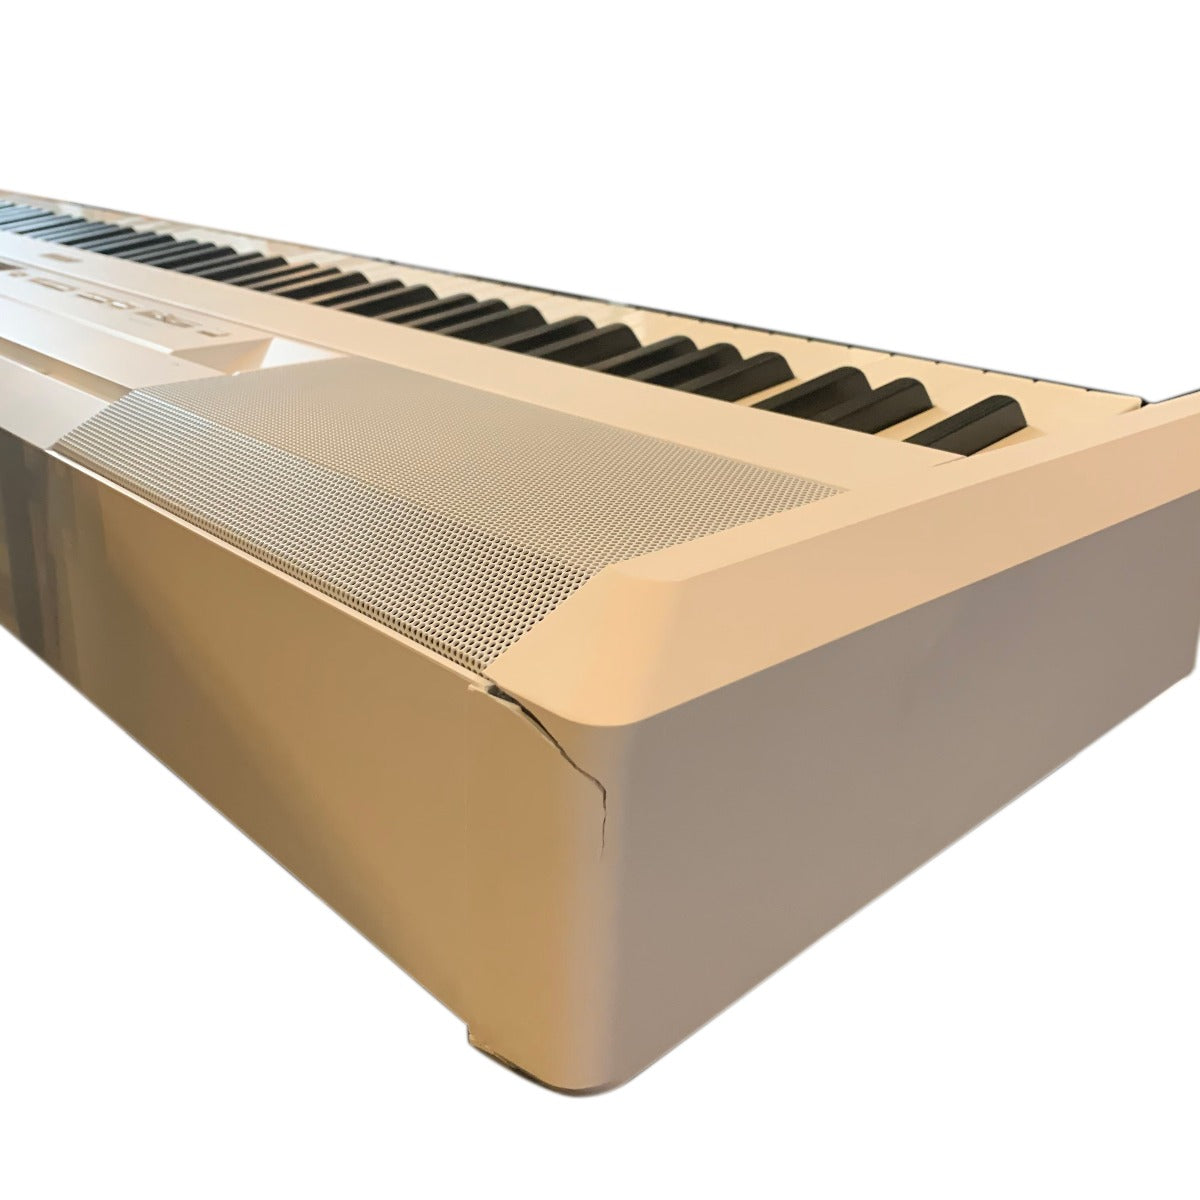 Yamaha P515WH White Digital Piano